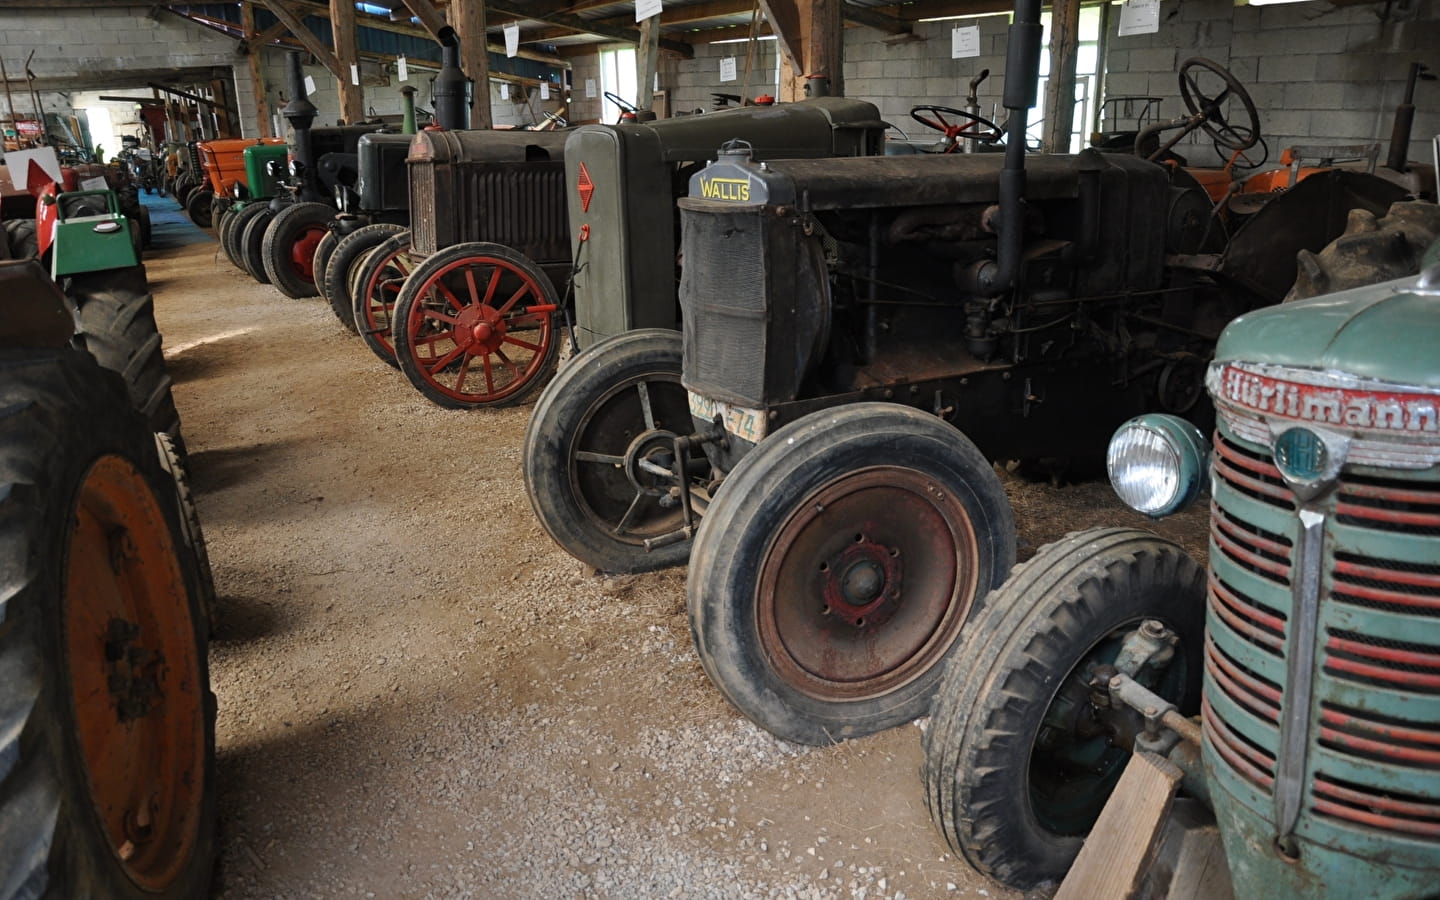 Mon Rêve' tractor museum